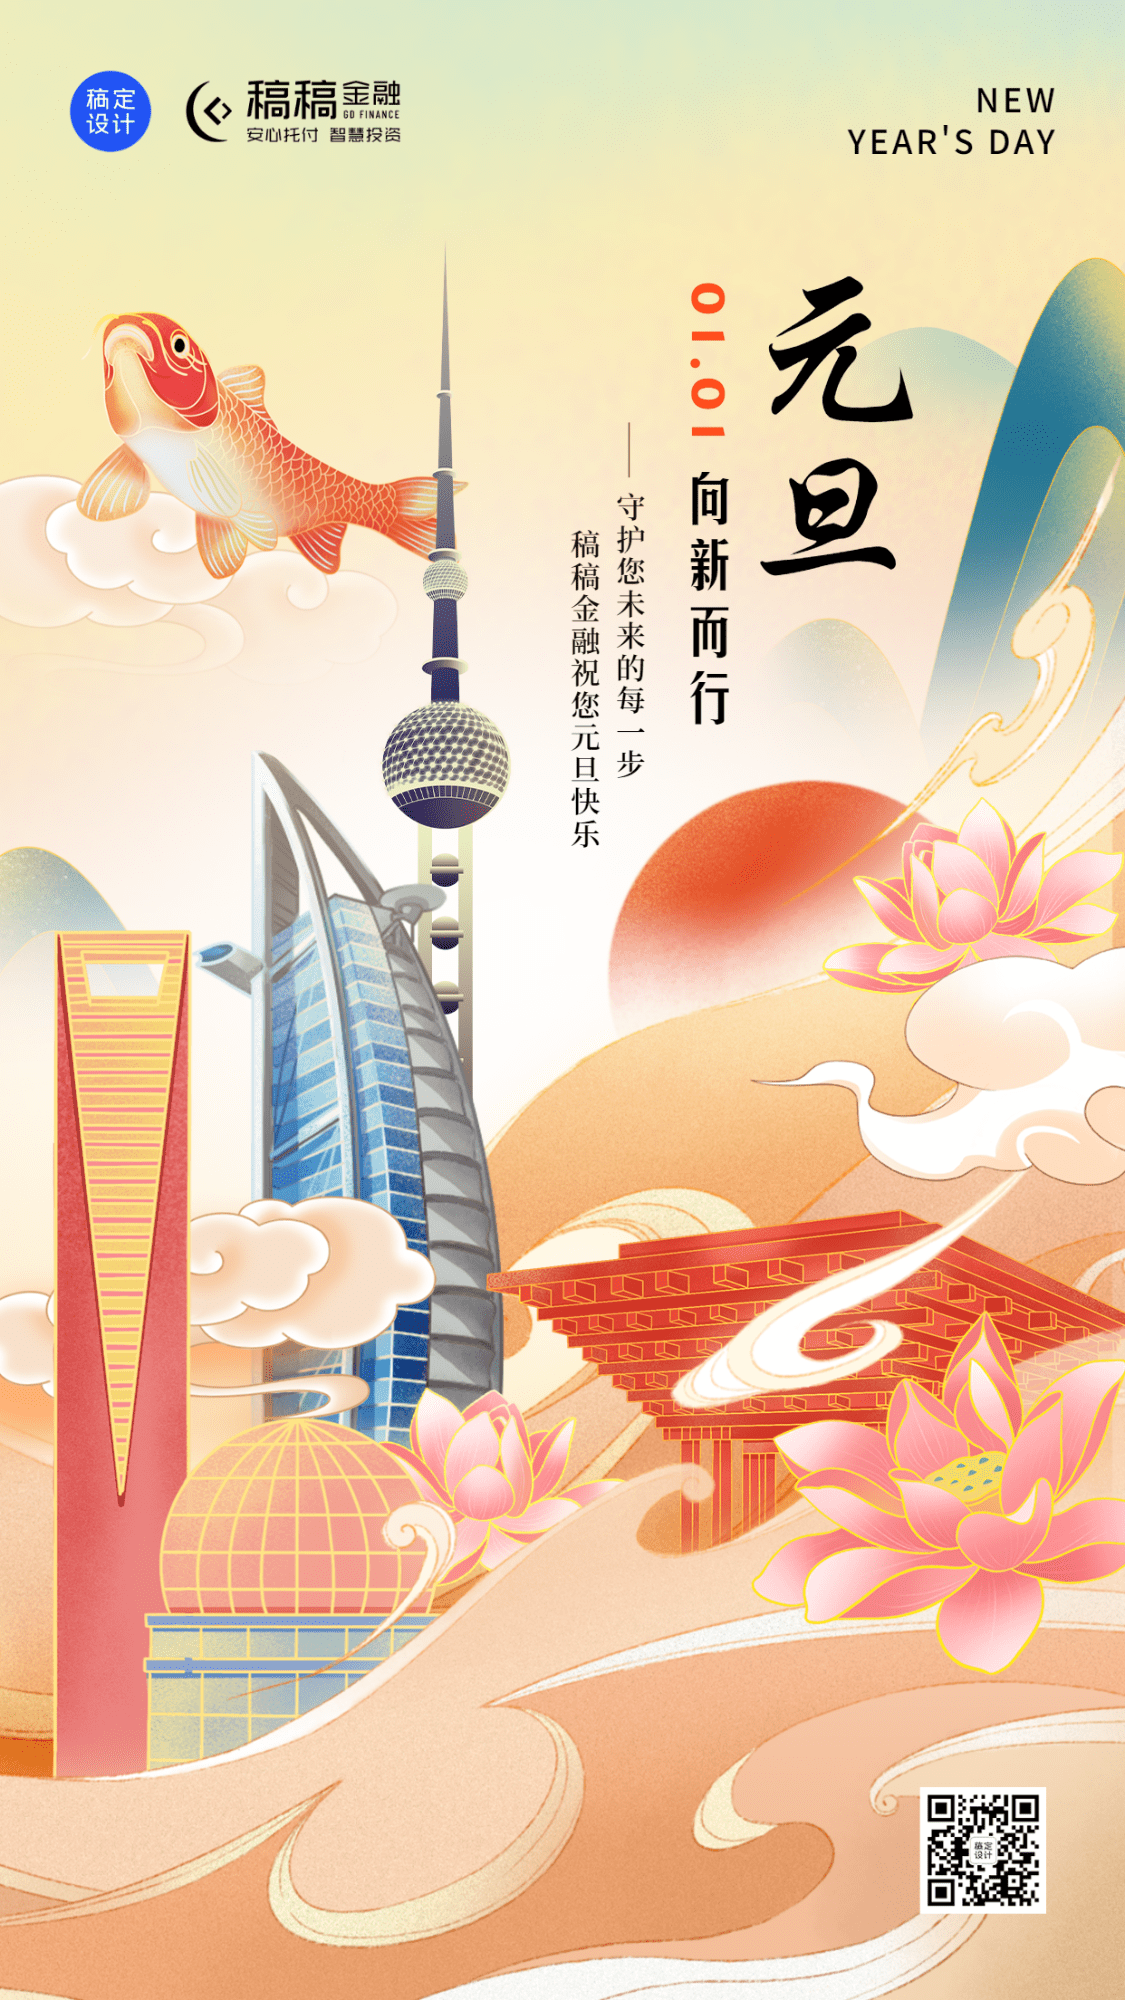 元旦金融保险节日祝福中国风海报预览效果